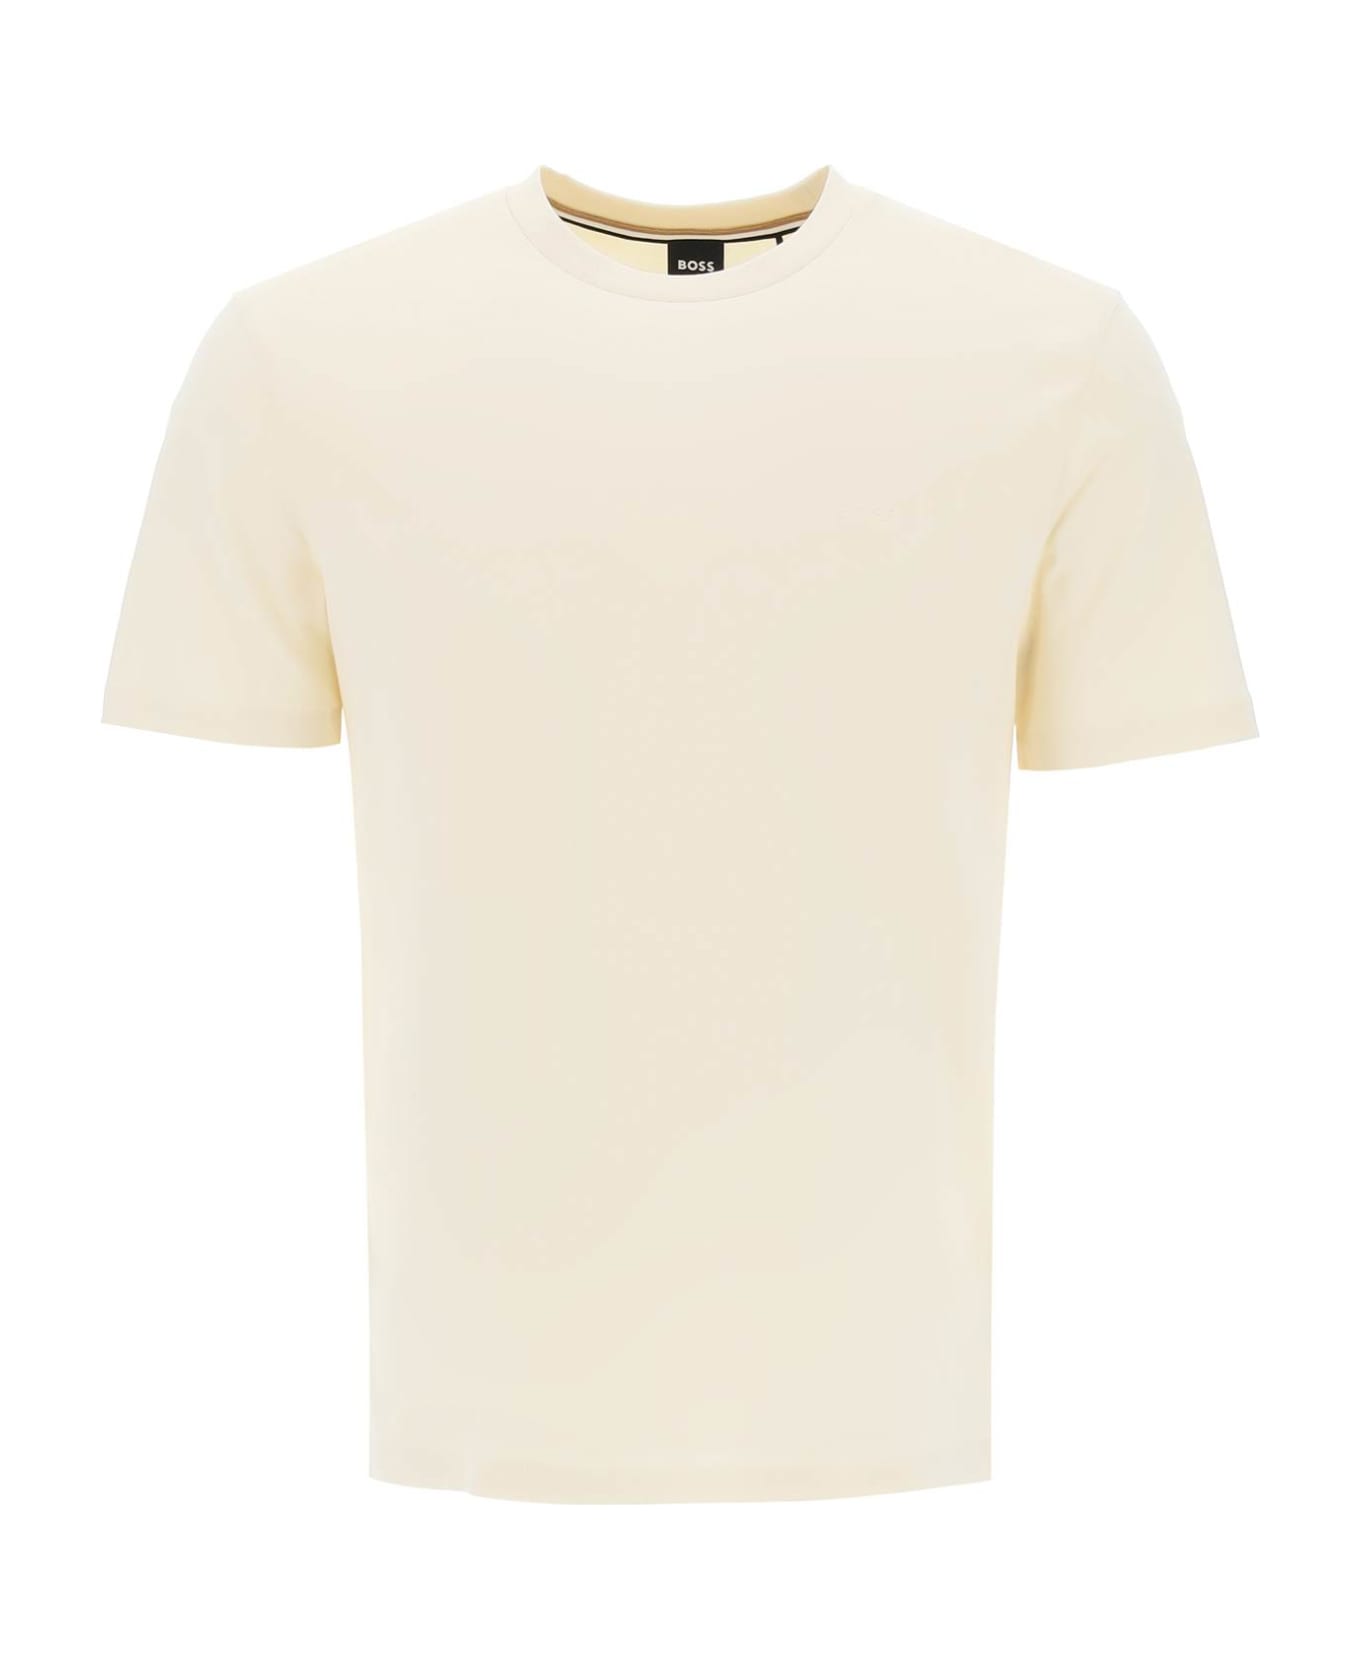 Hugo Boss Thompson T-shirt - OPEN WHITE